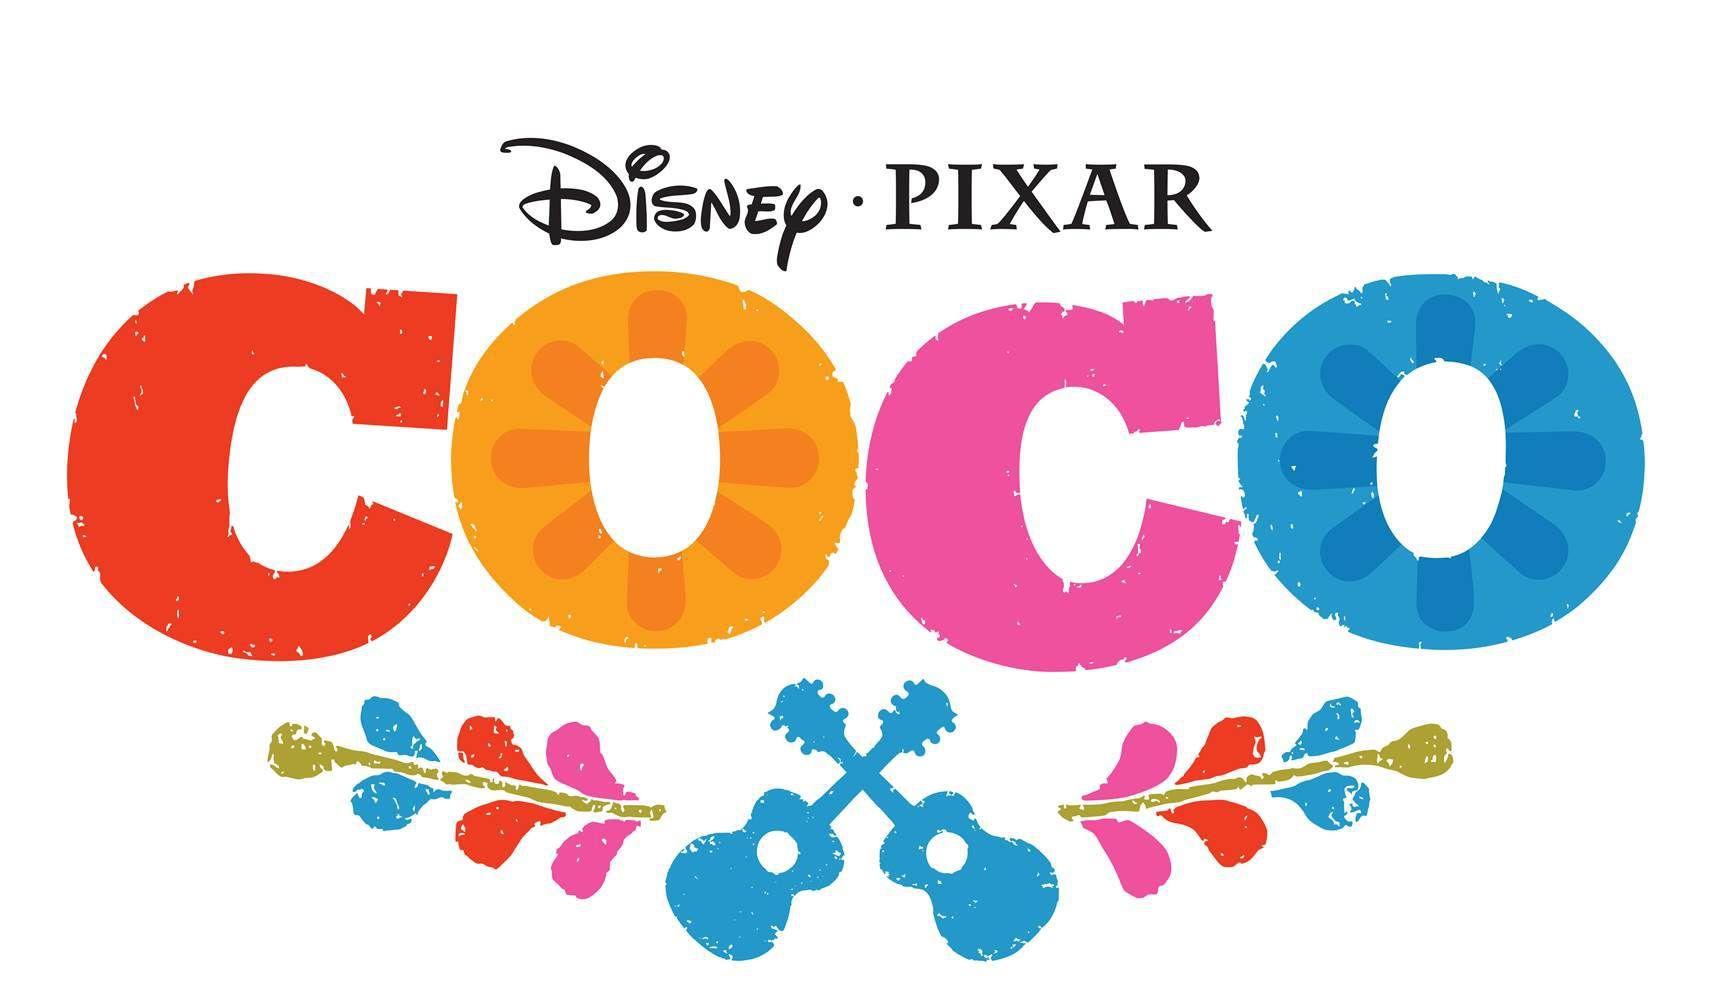 Pixar Movie Logo - Coco Pixar Movie Logo. Movie Night. Disney